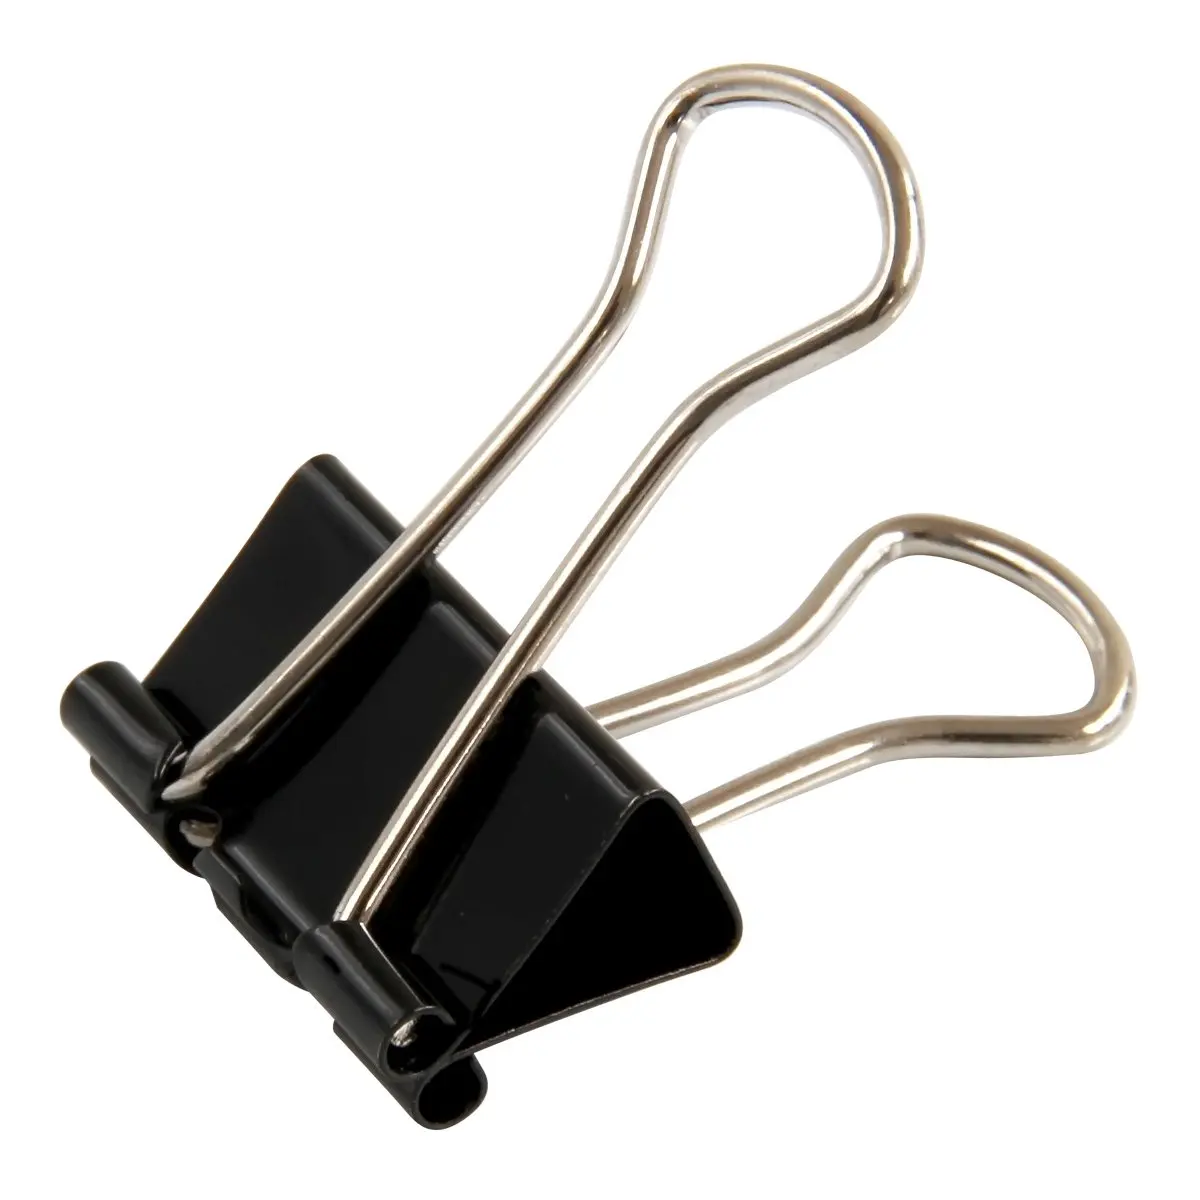 Black binder clip